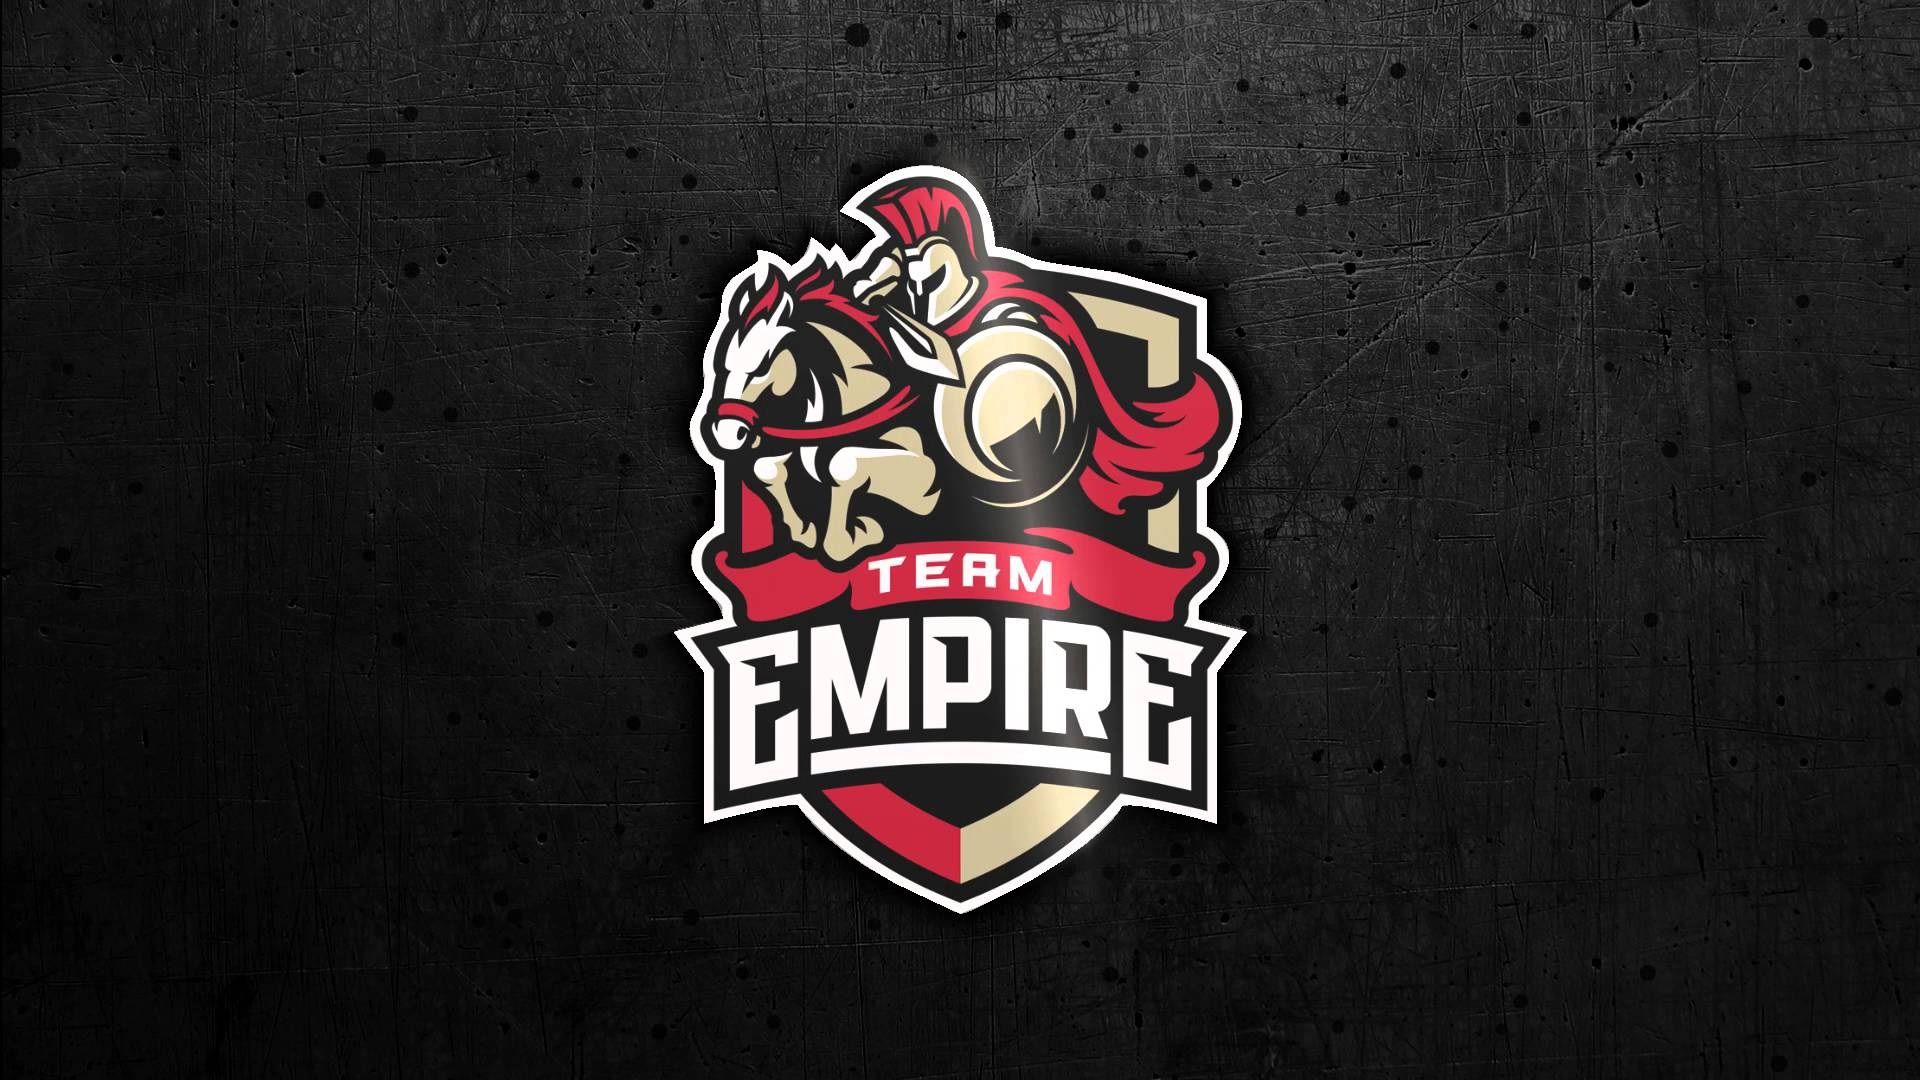 Empire вышла в гранд-финал чемпионата мира по R6